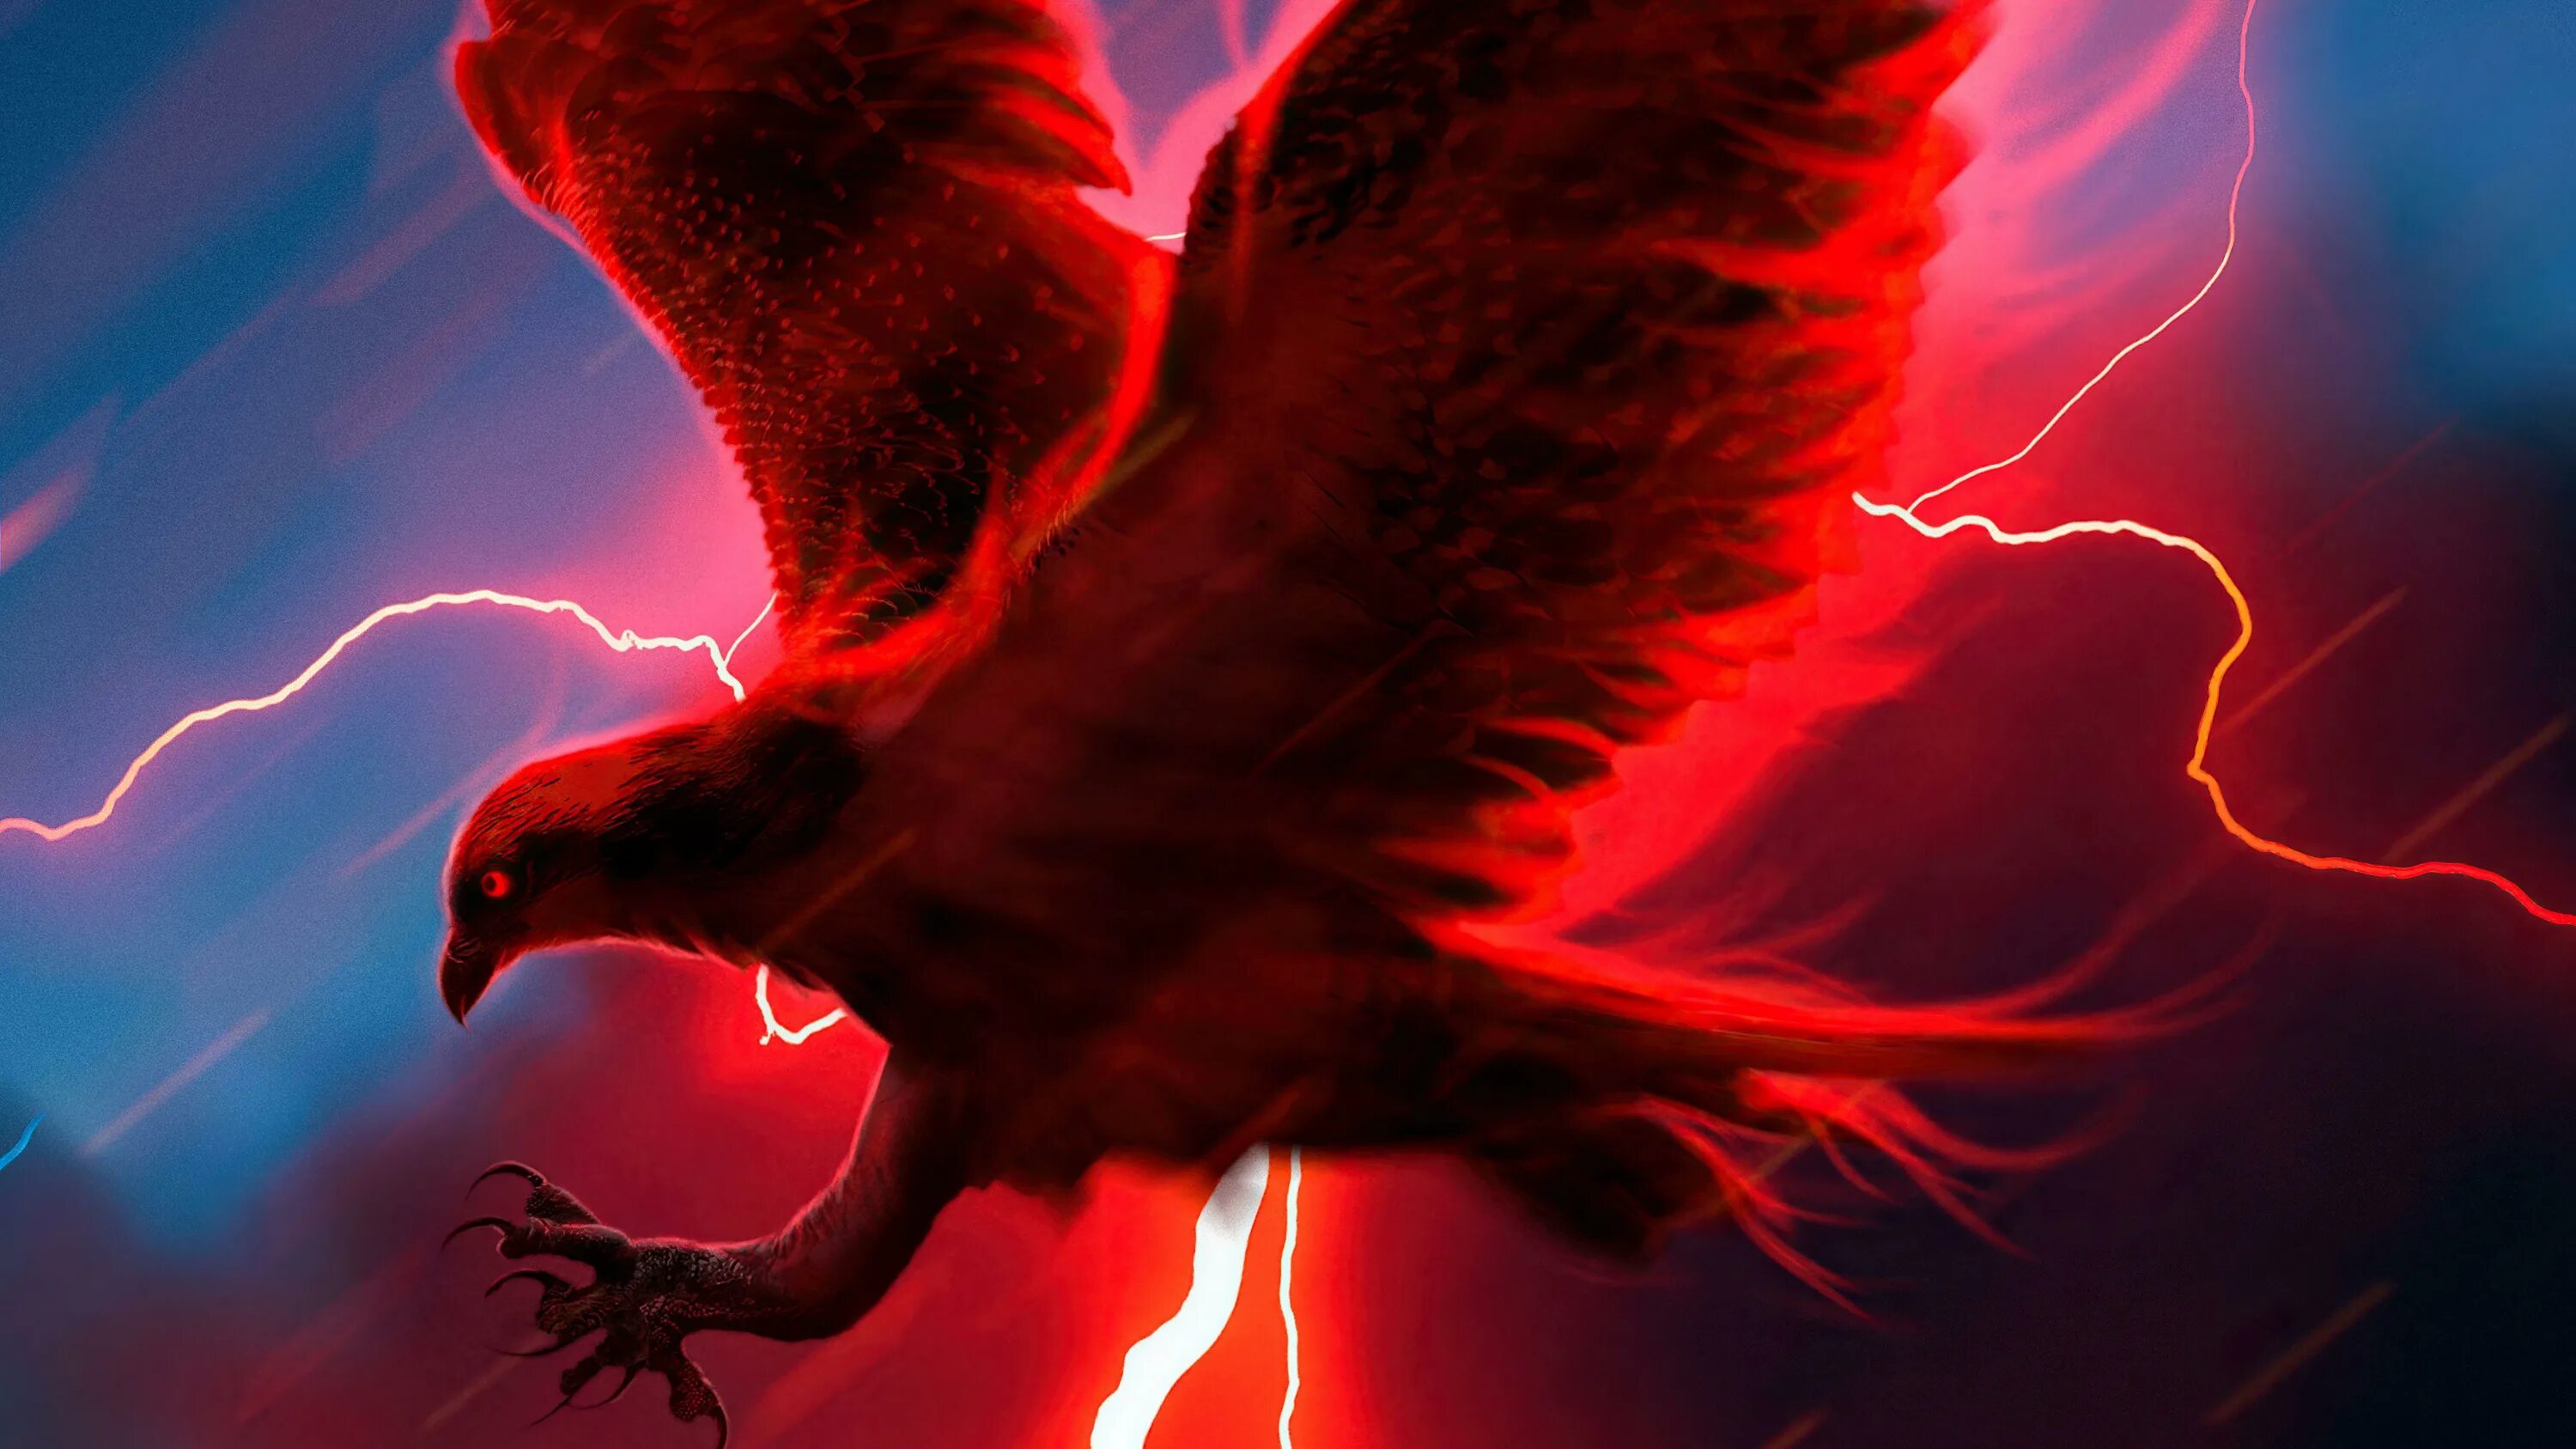 Ред игл. Красная молния. Красные Орлы. Огненный Орел. Орел обои.